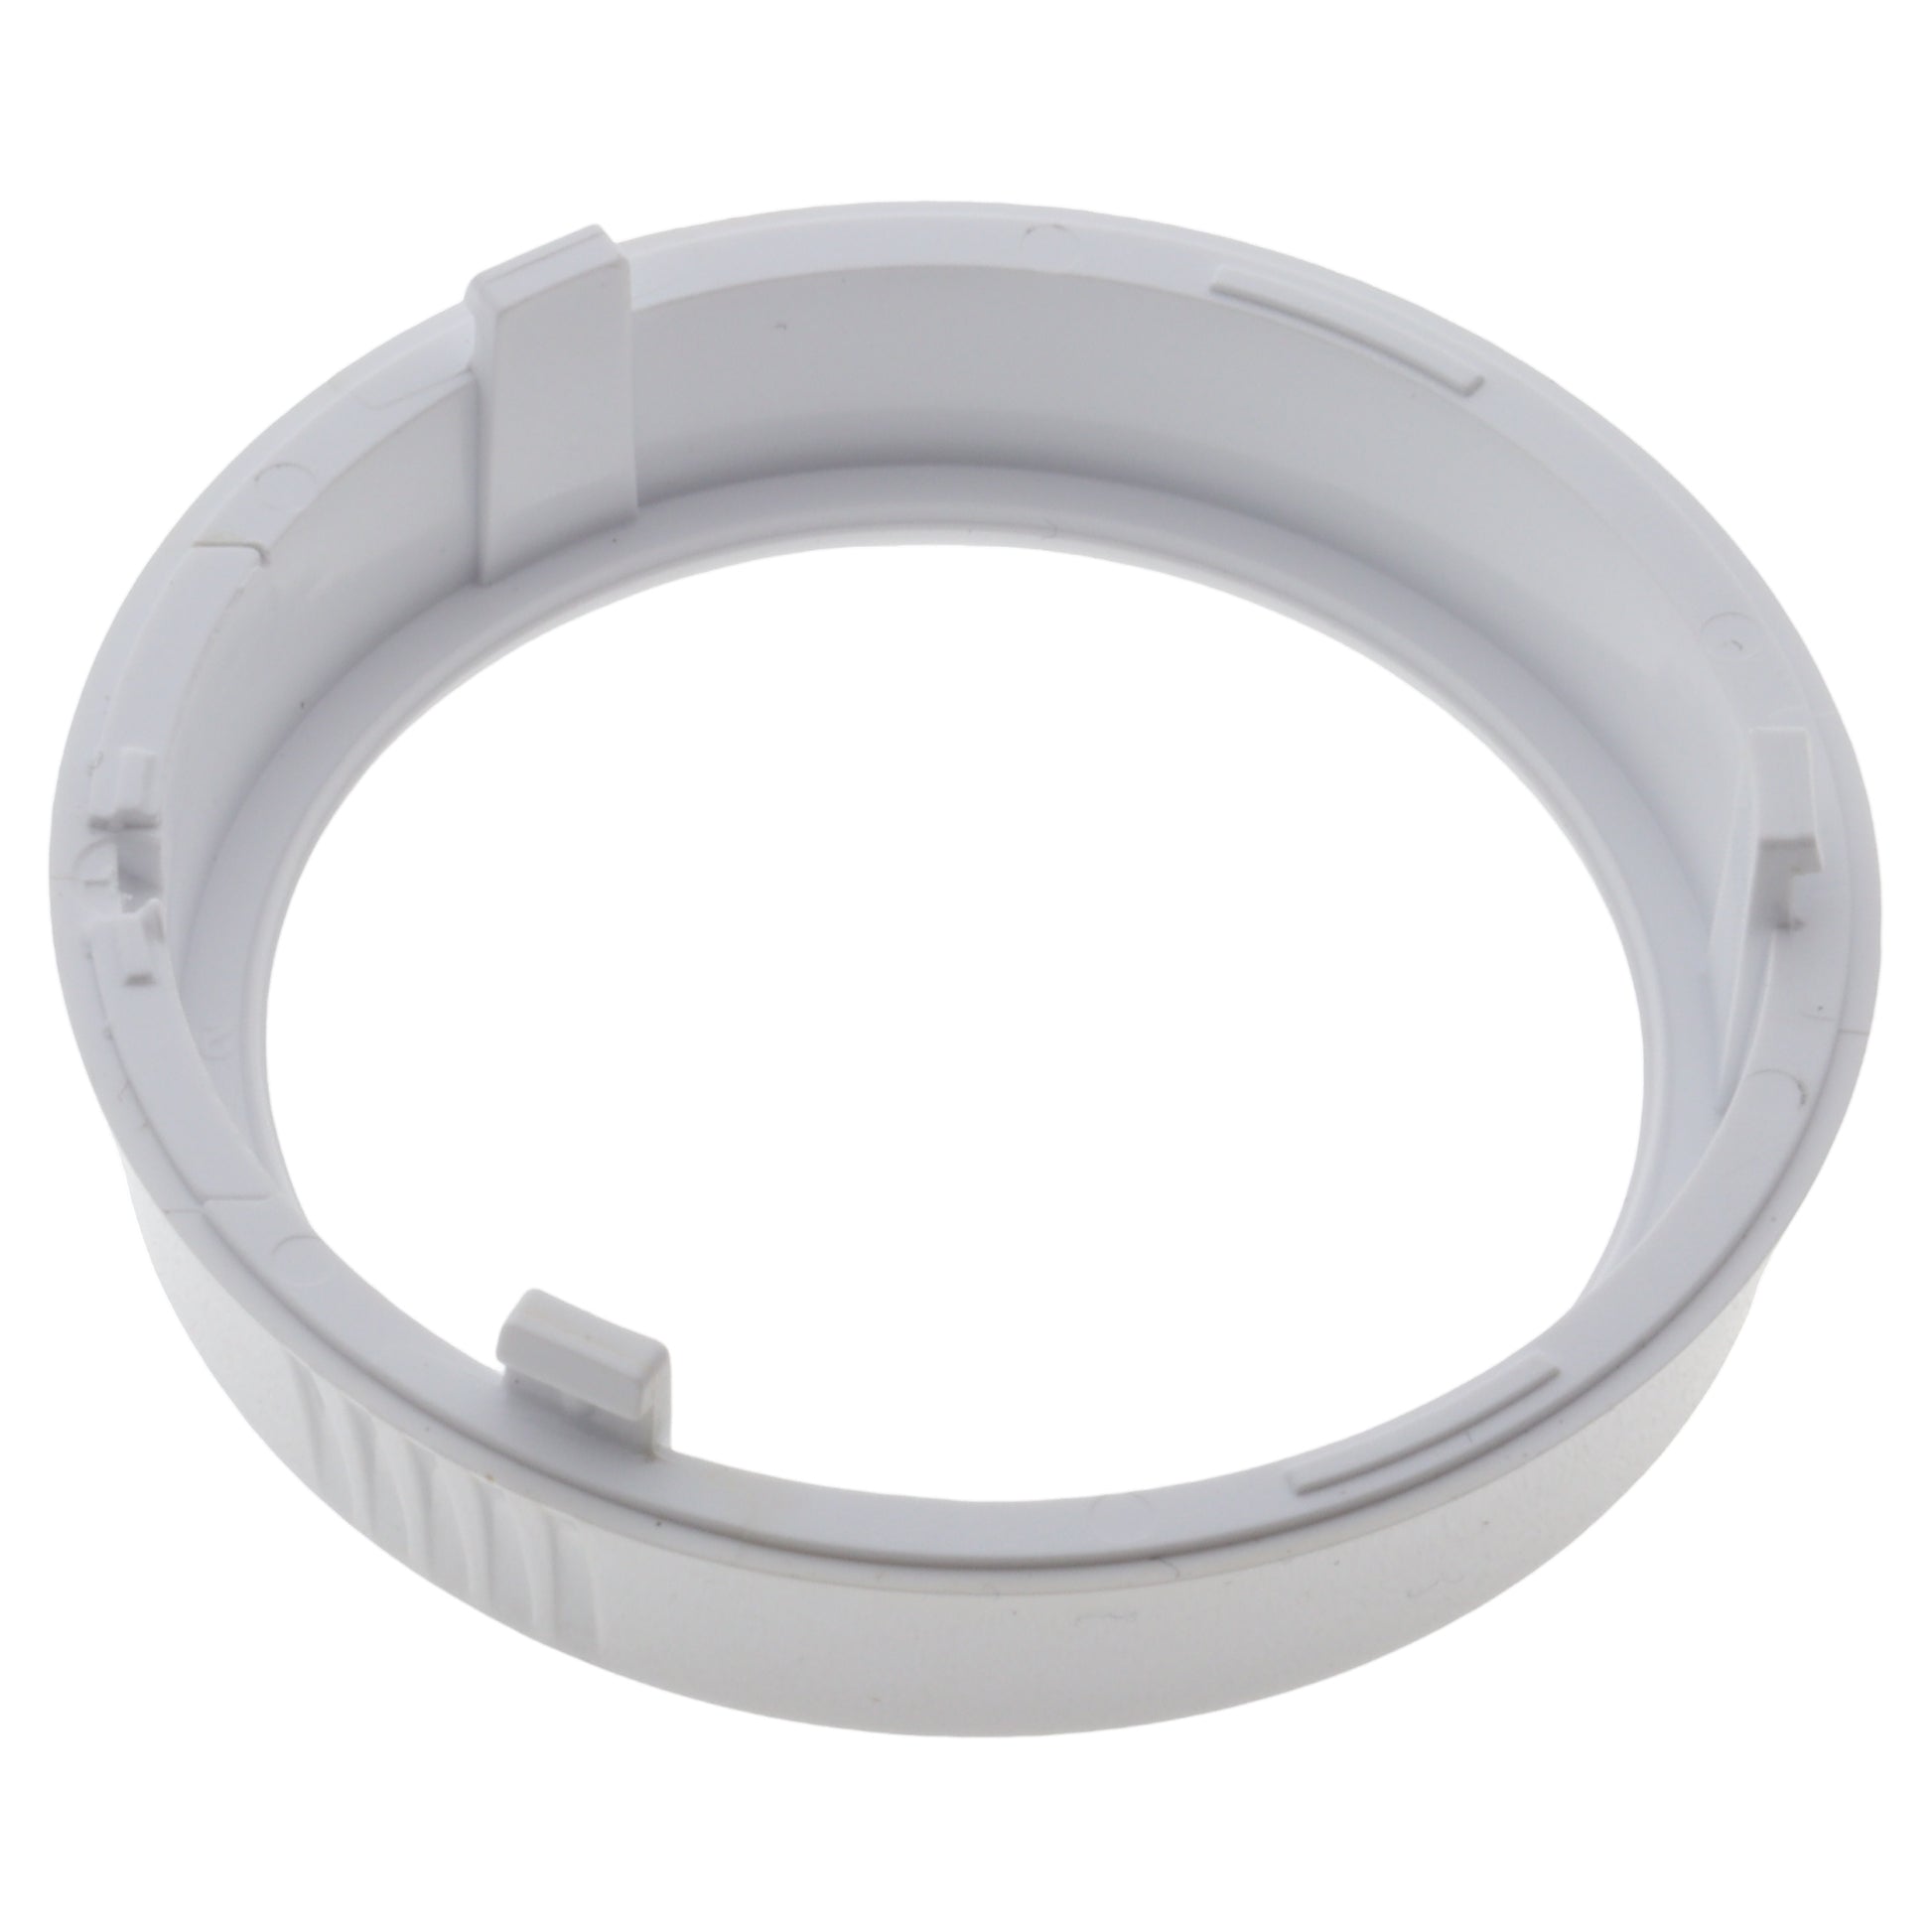 Elchim ghiera posteriore supporto filtro phon asciugacapelli 3800 Idea Ionic